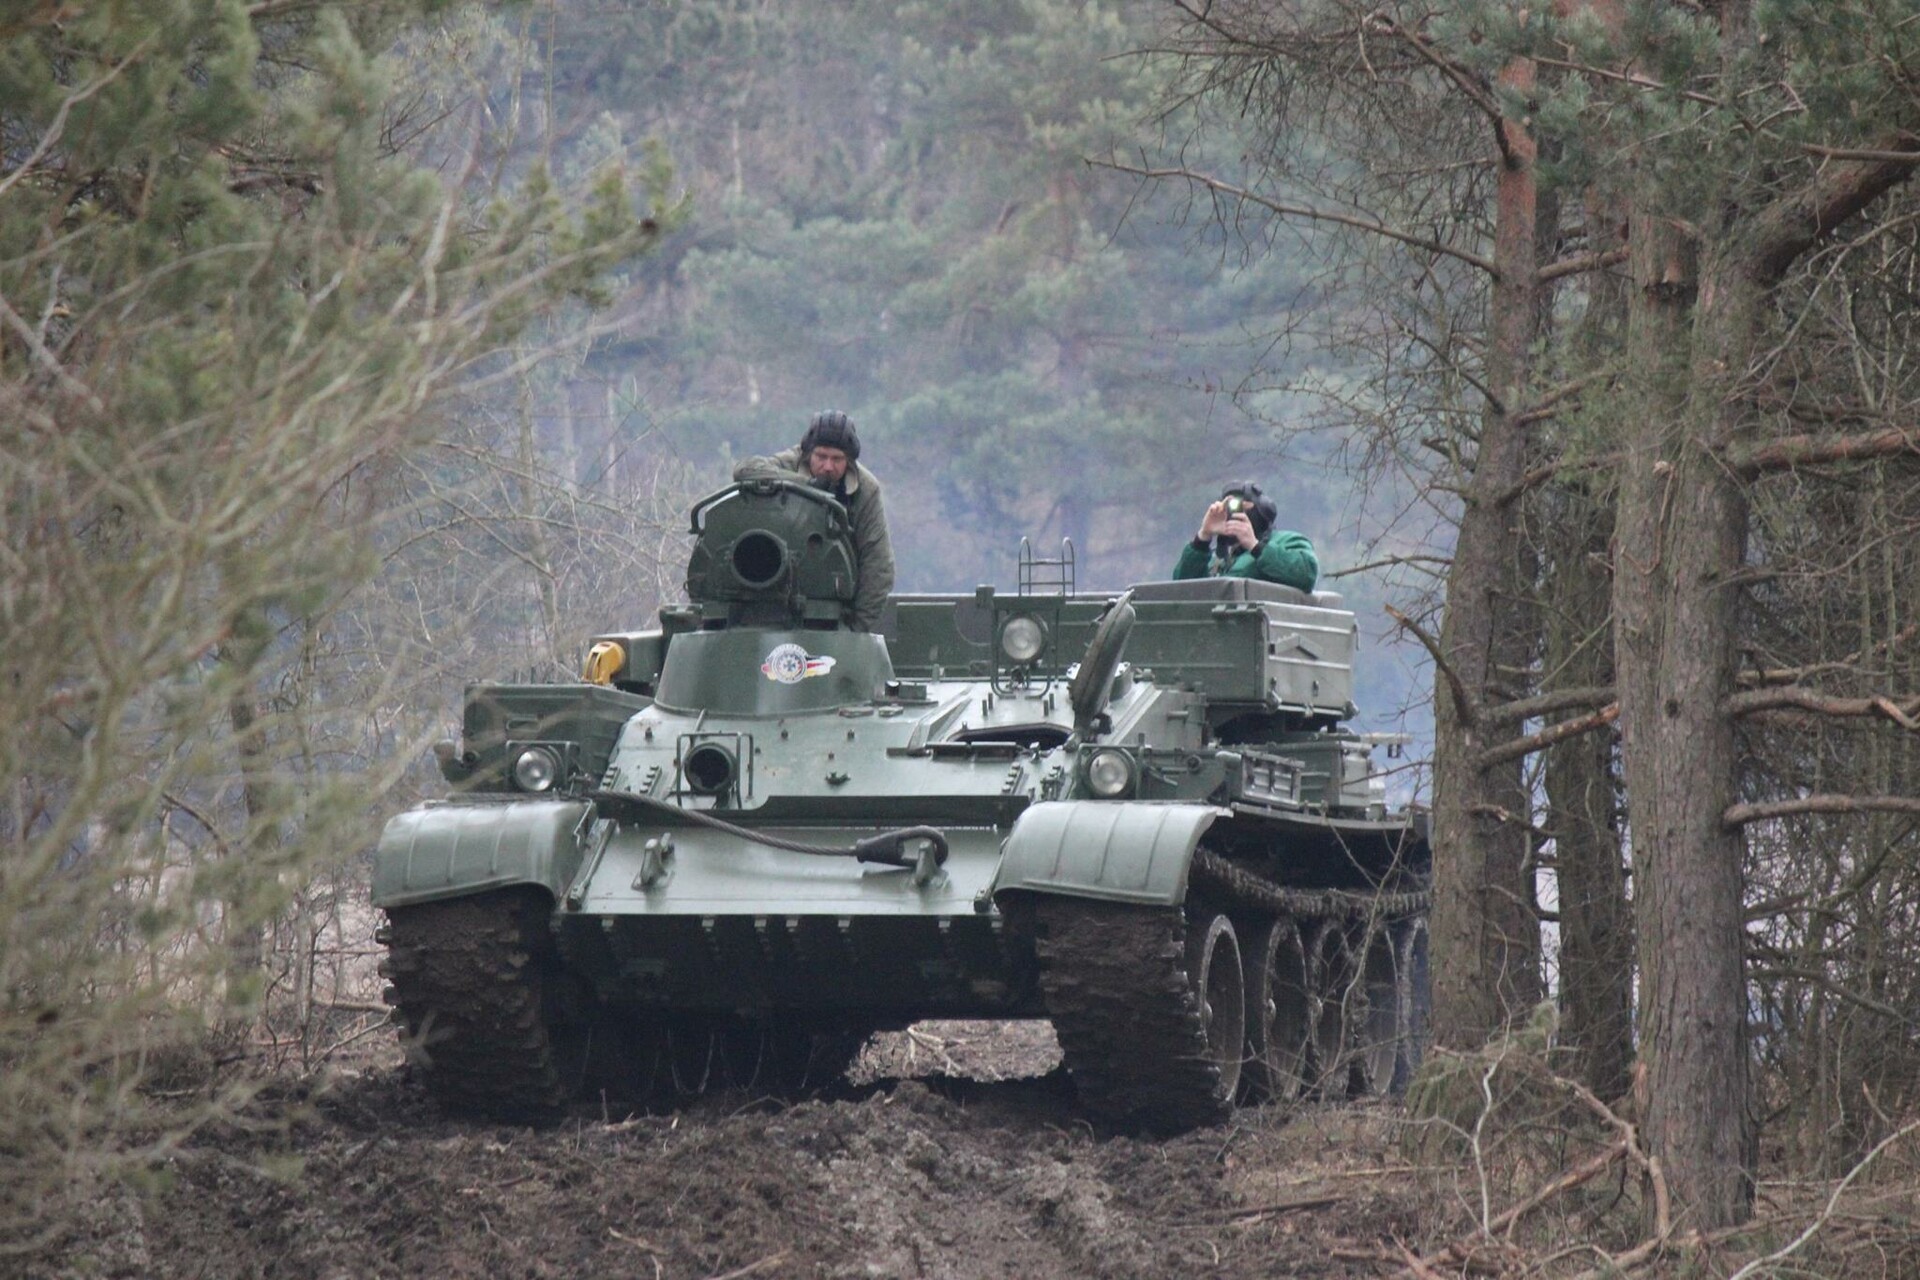 Panzer selber fahren im T-55